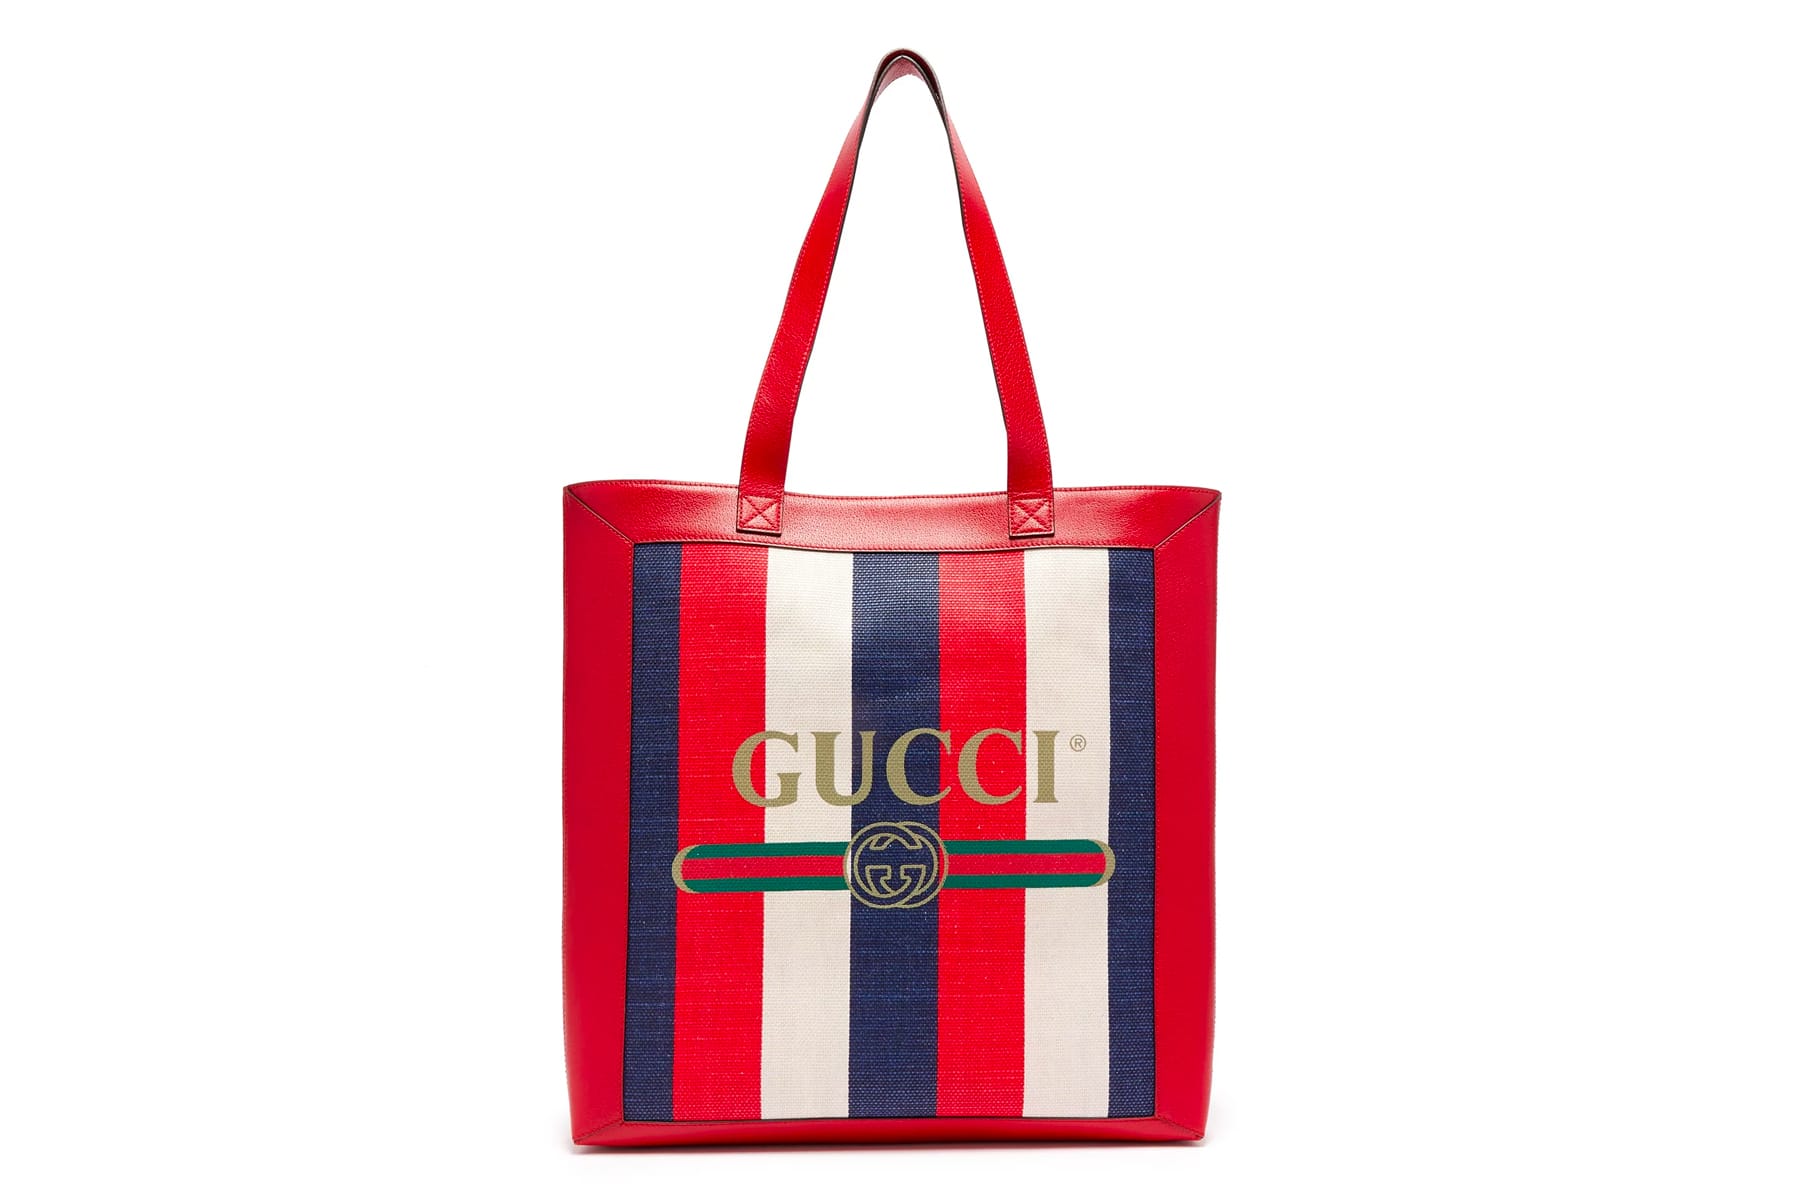 Gucci Tote Bags Pre-Fall 2018 